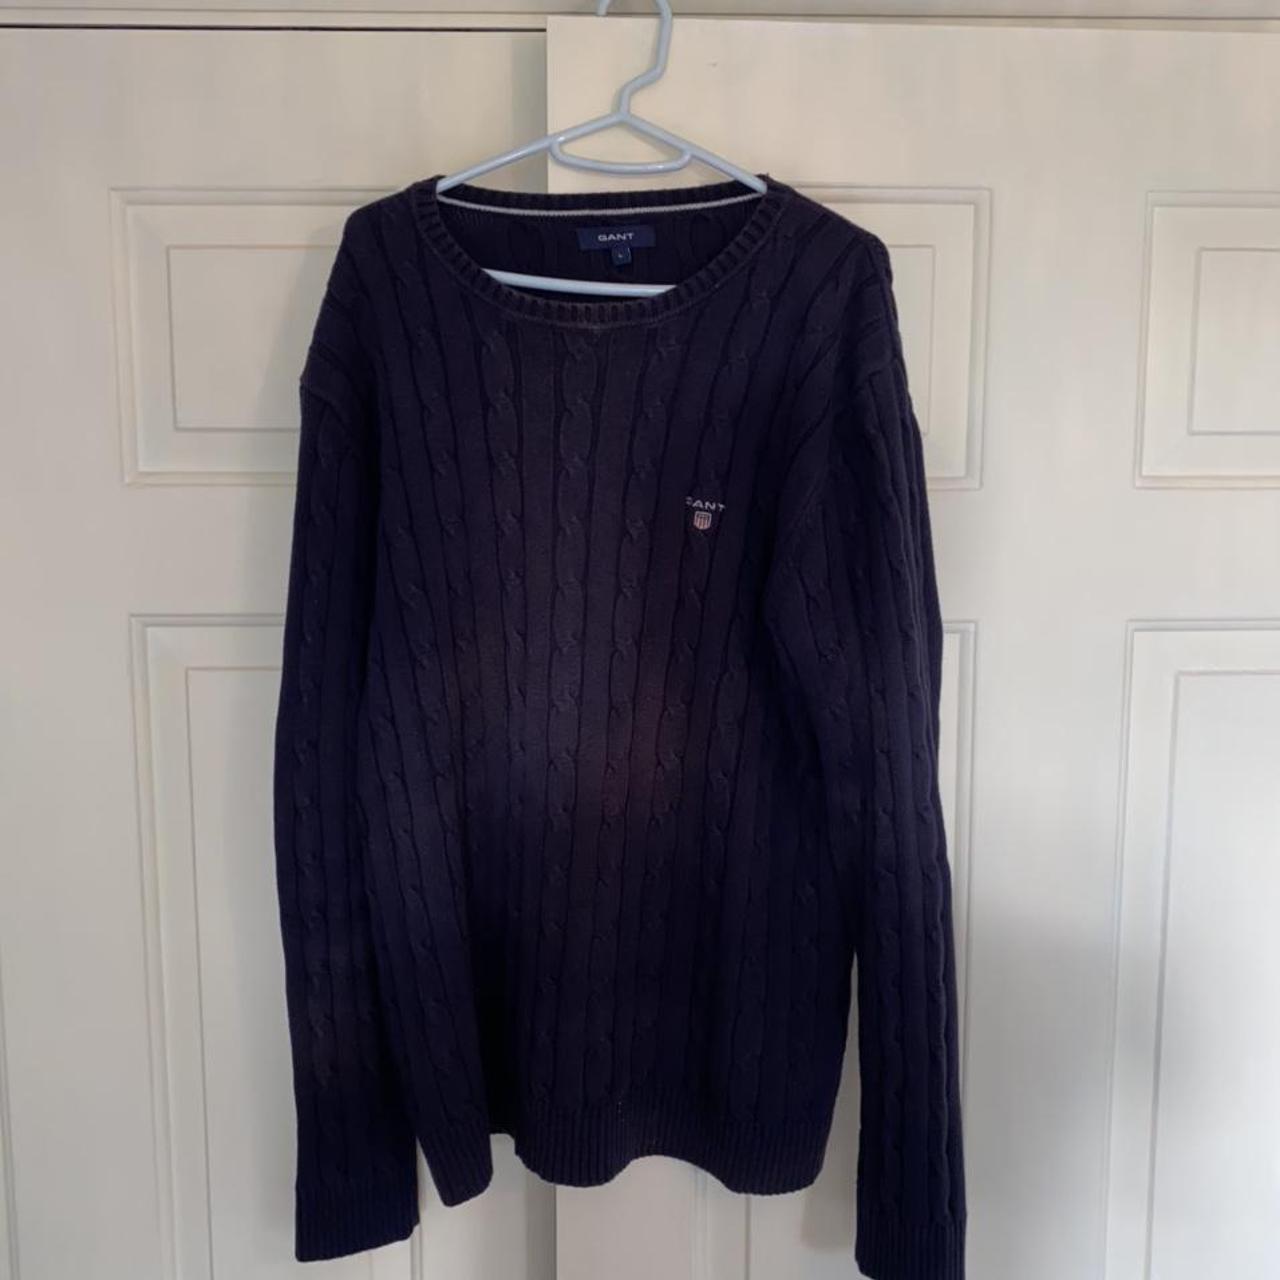 Product Image 1 - Vintage Gant Sweater Jumper 

Size